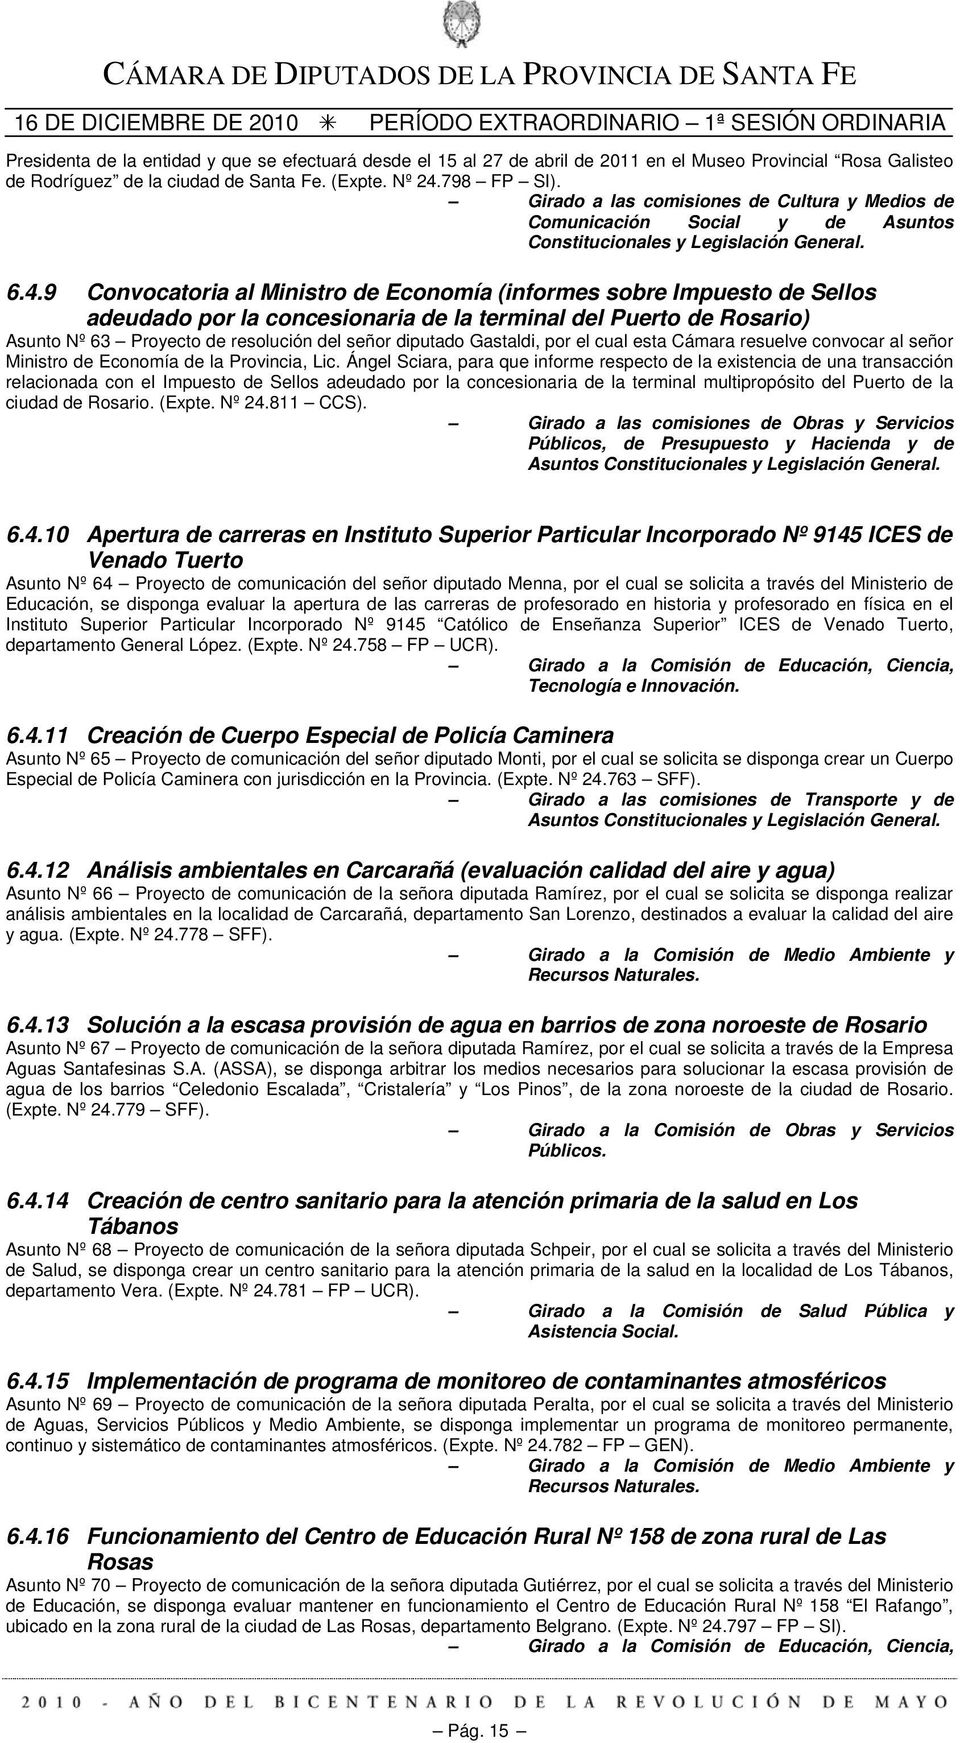 9 Convocatoria al Ministro de Economía (informes sobre Impuesto de Sellos adeudado por la concesionaria de la terminal del Puerto de Rosario) Asunto Nº 63 Proyecto de resolución del señor diputado